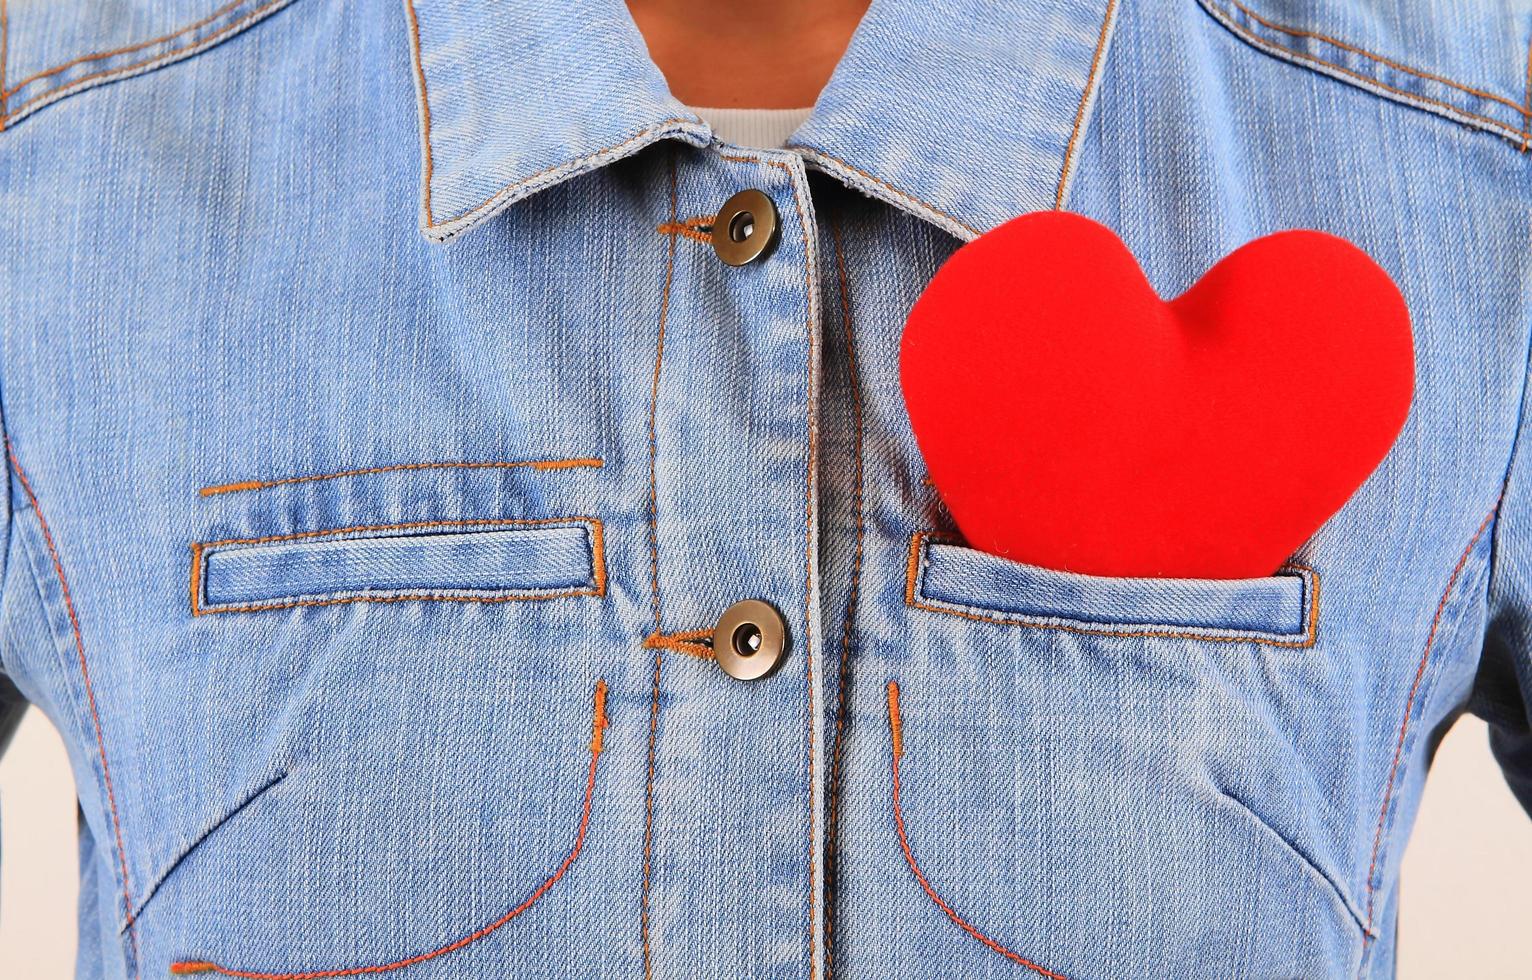 cuore rosso che spunta dalla tasca posteriore dei blue jeans foto